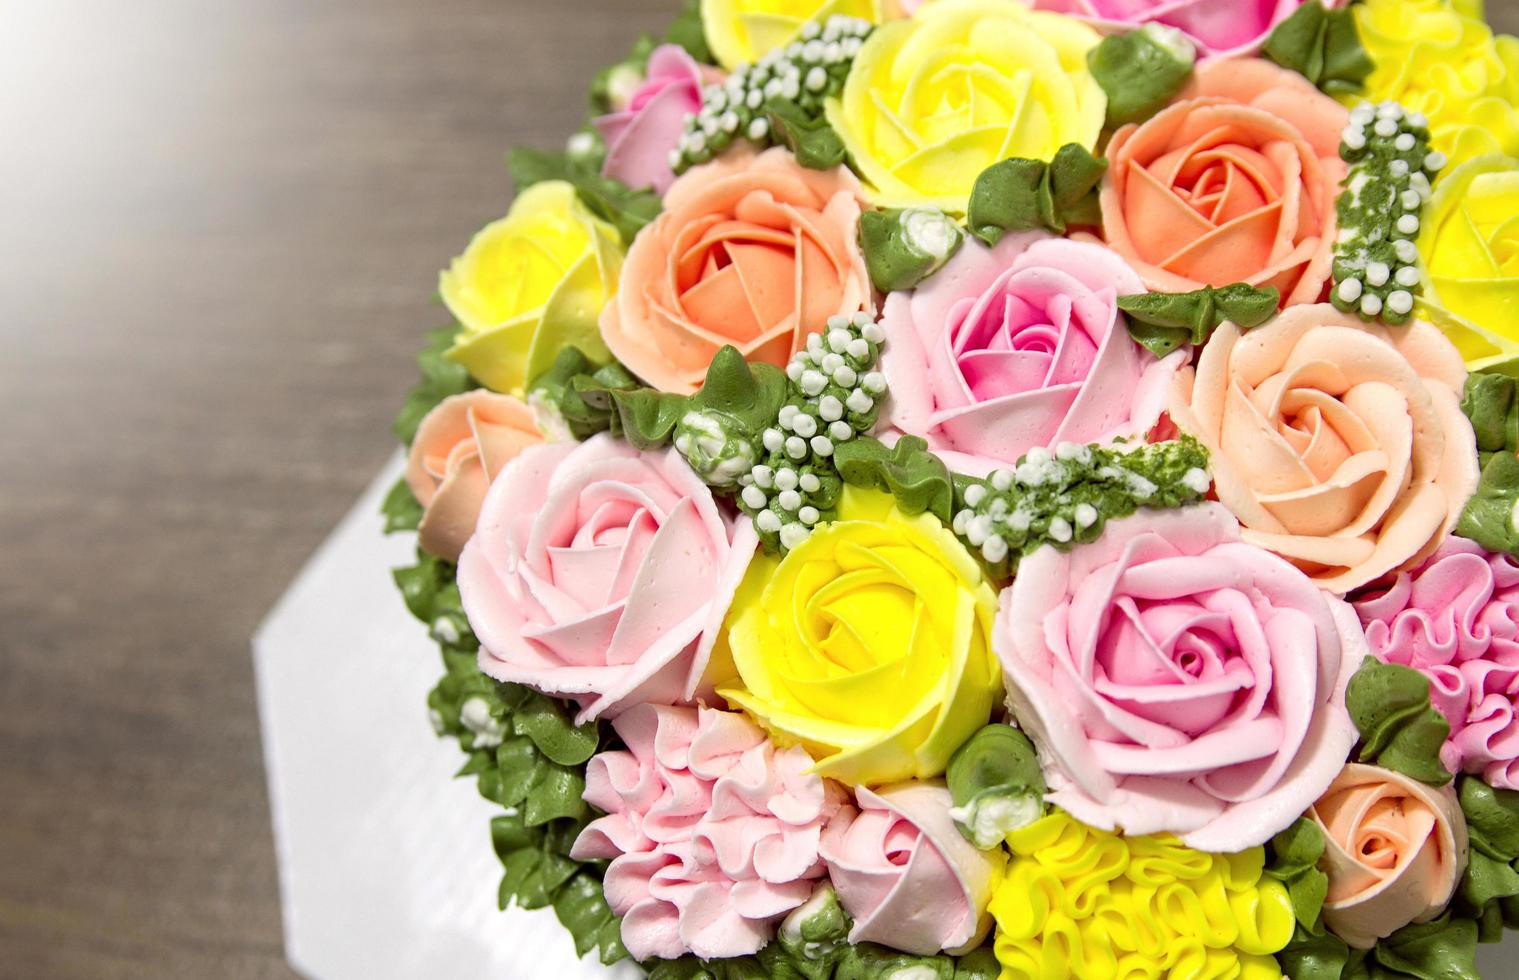 gâteau d'anniversaire avec des fleurs photo